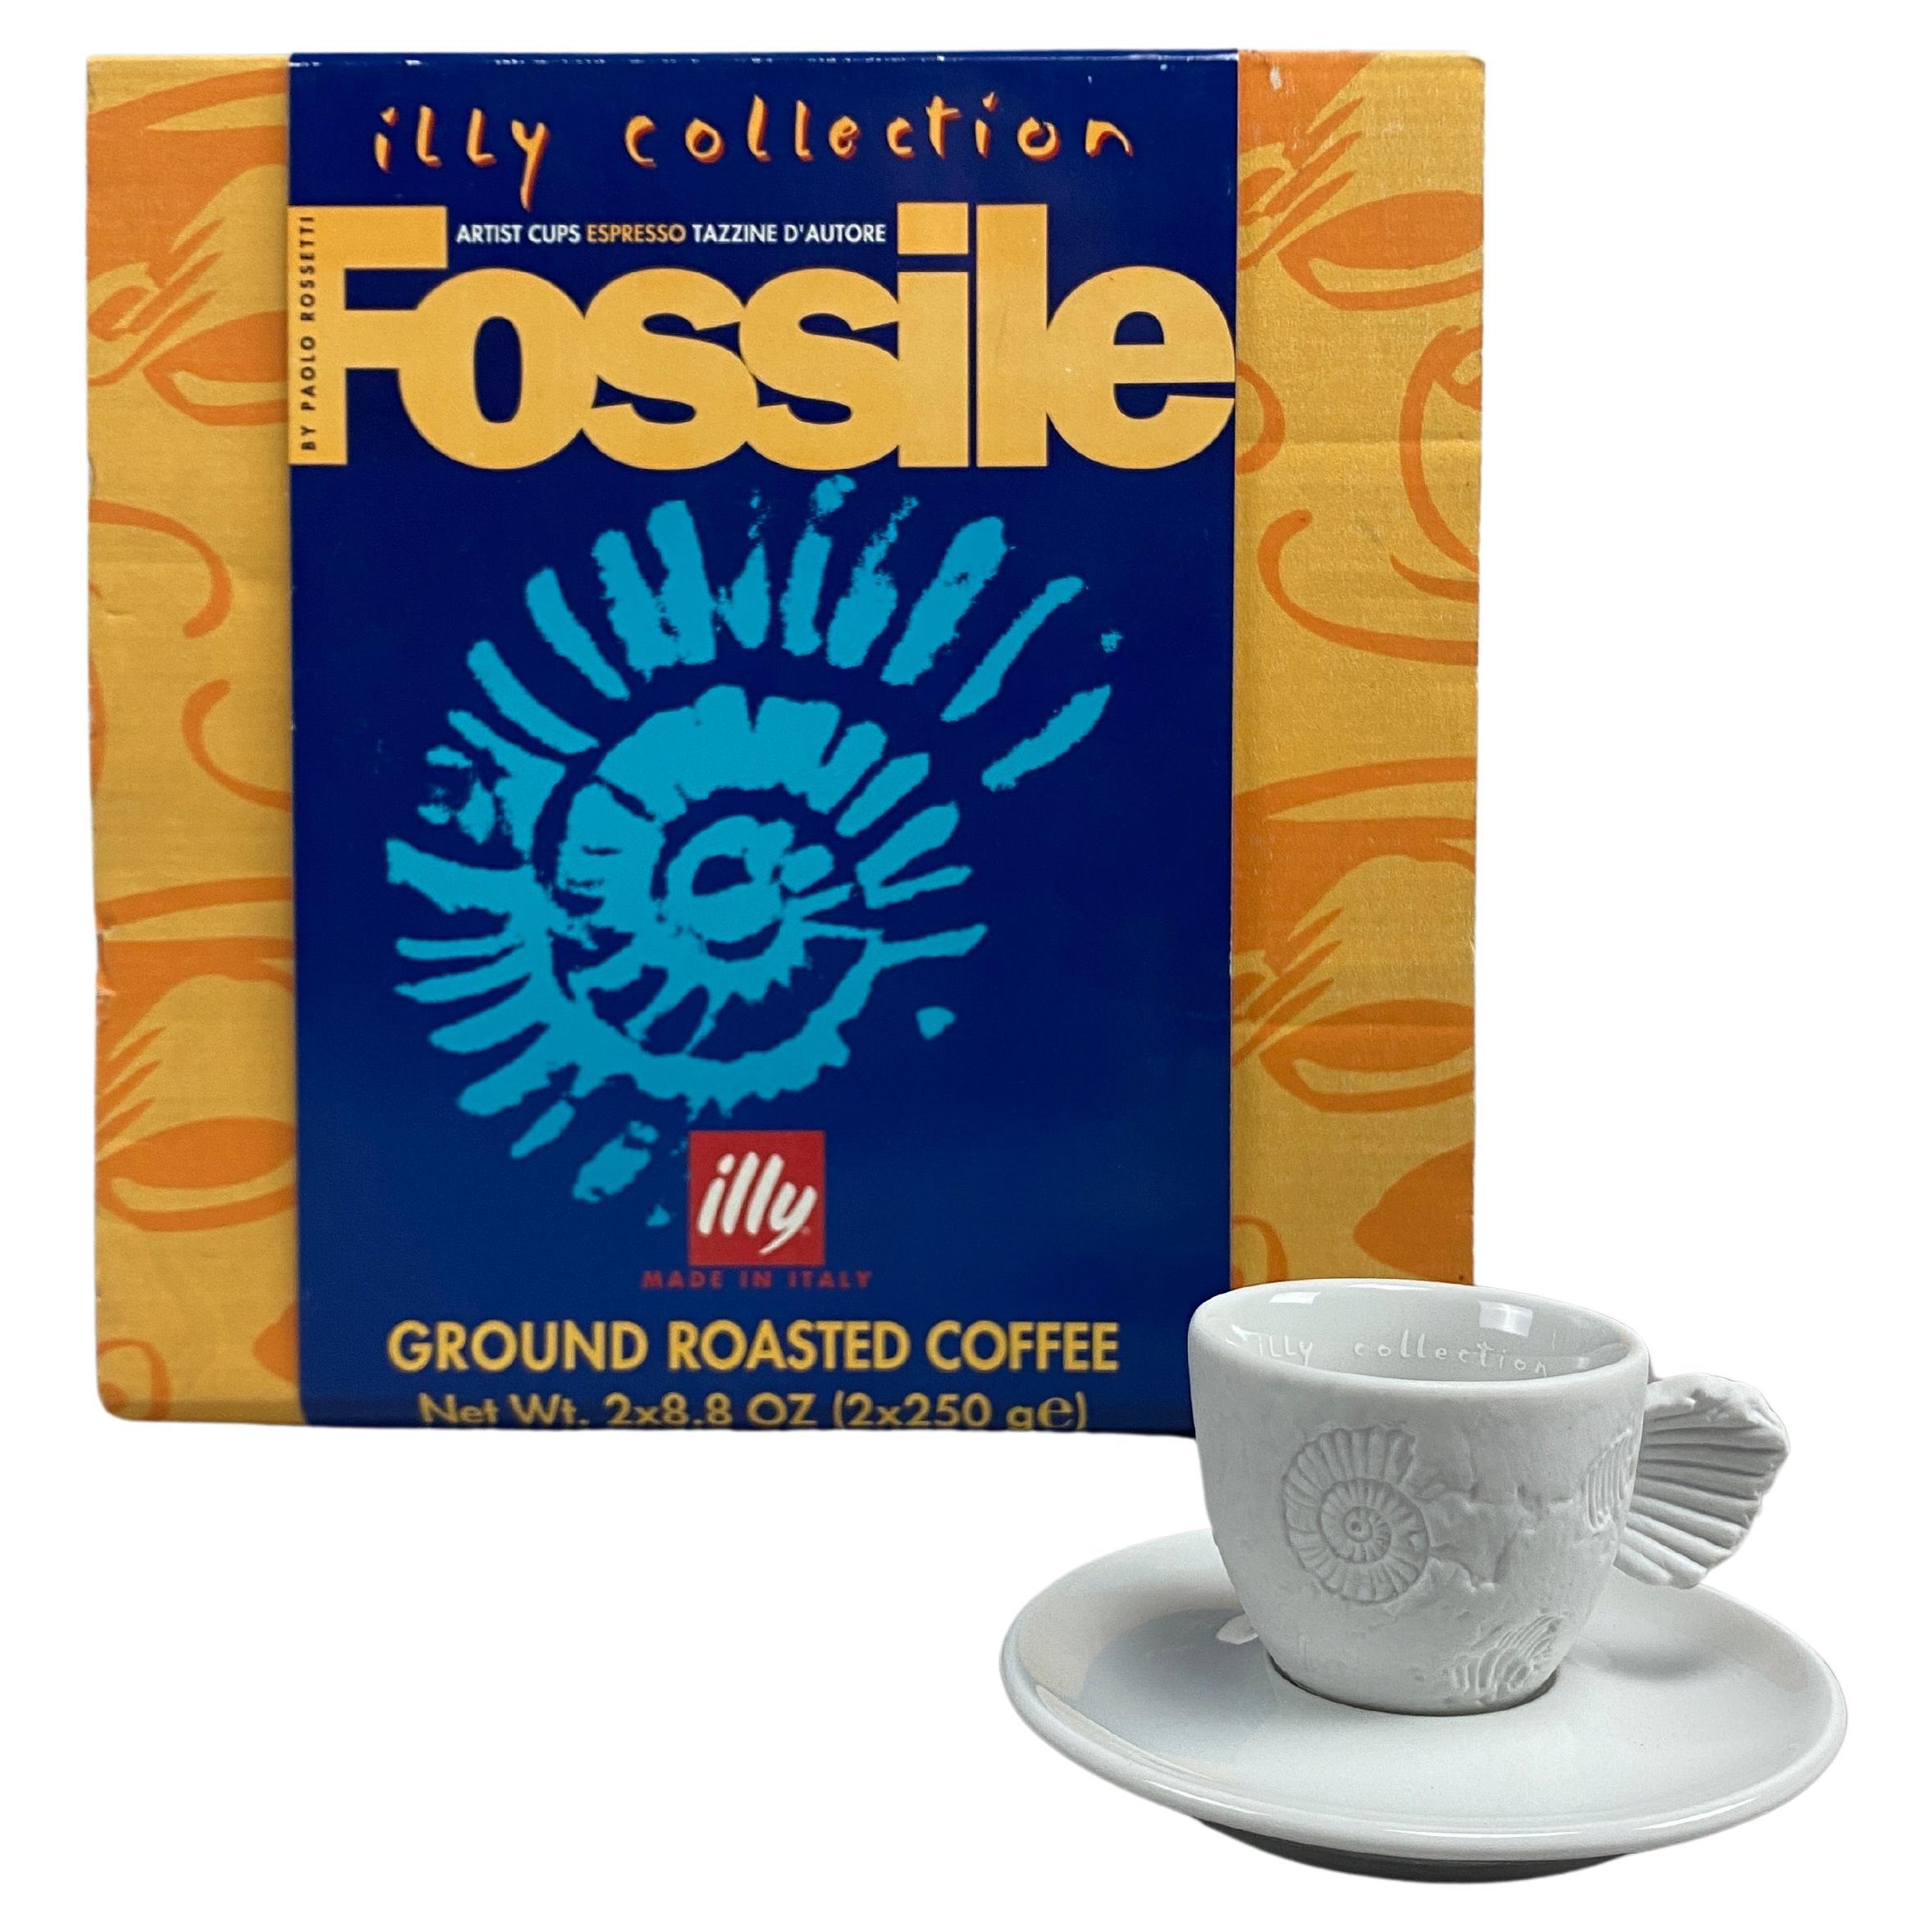 Fossile Espresso-Tasse von Paolo Rossetti für die Illy-Kollektion